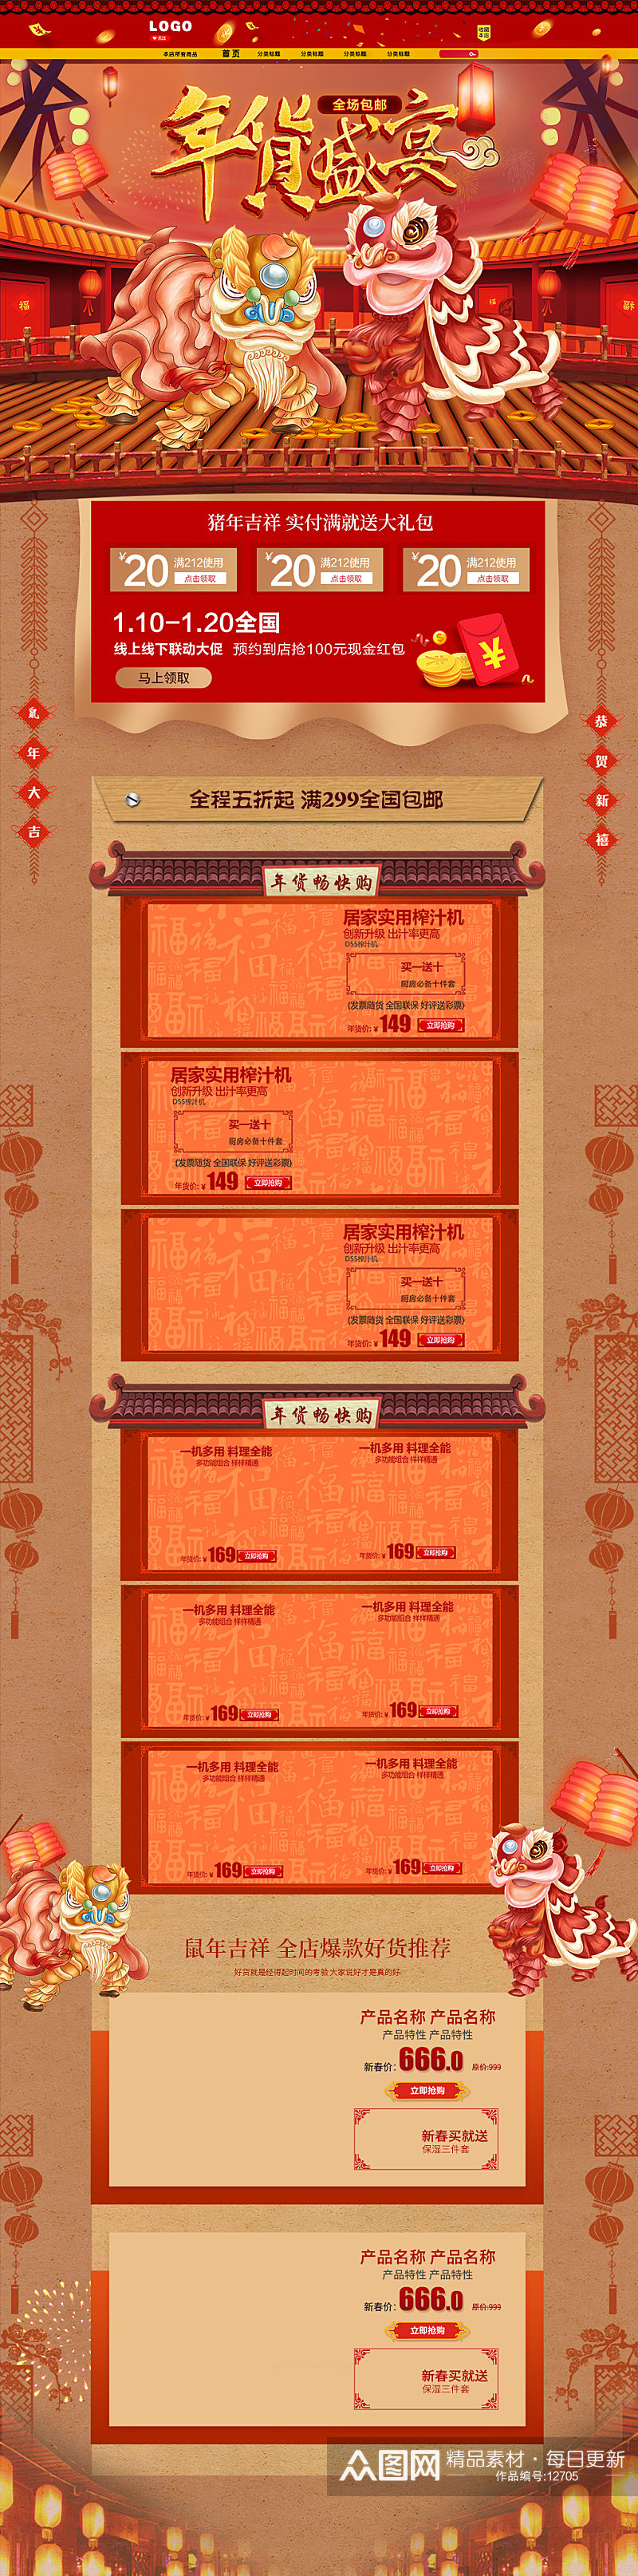 春节舞狮淘宝商城设计电商年货节详情页素材